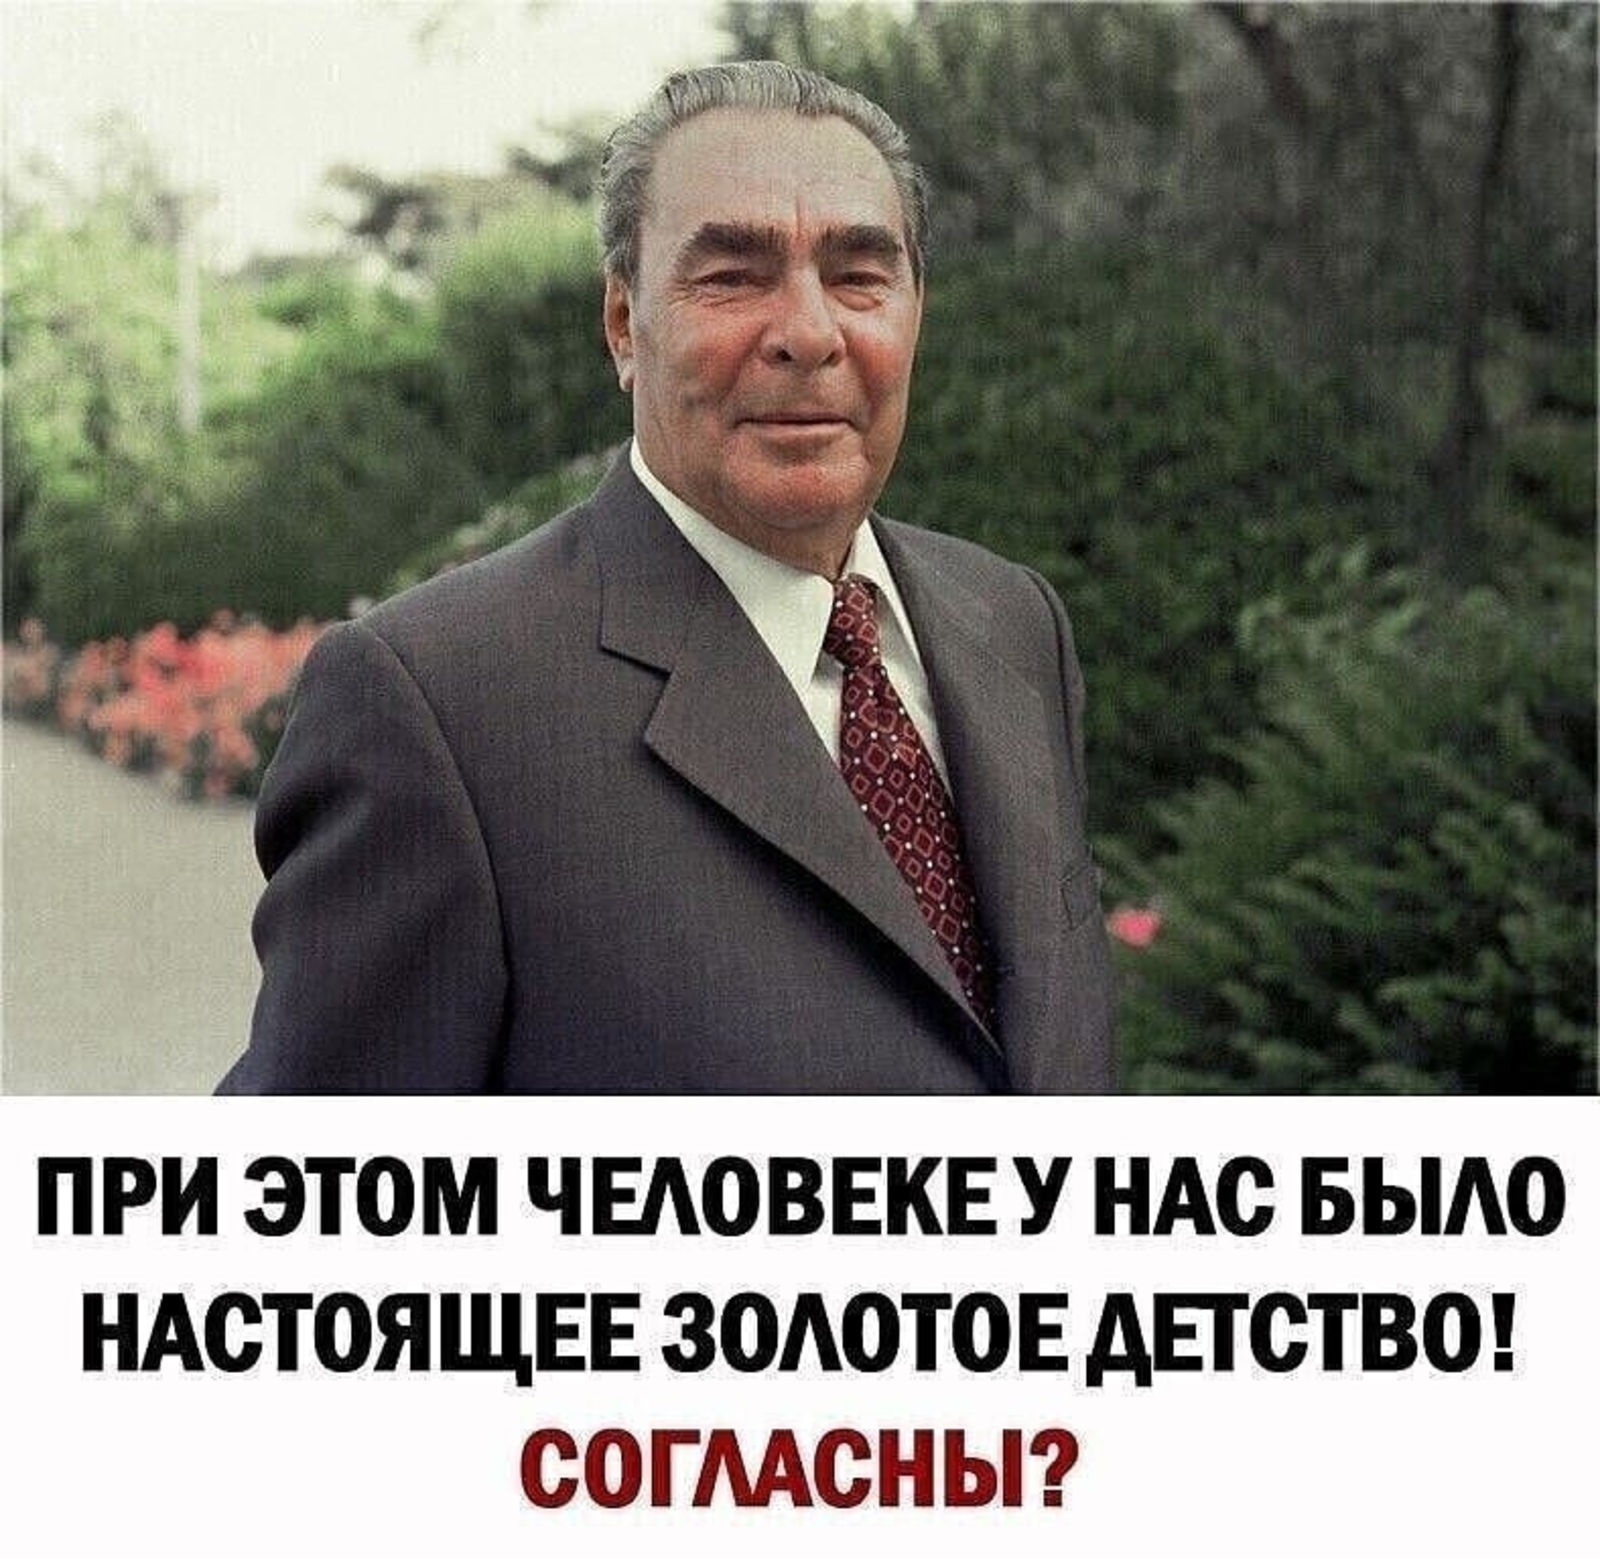 В этот день родился Леонид Ильич Брежнев